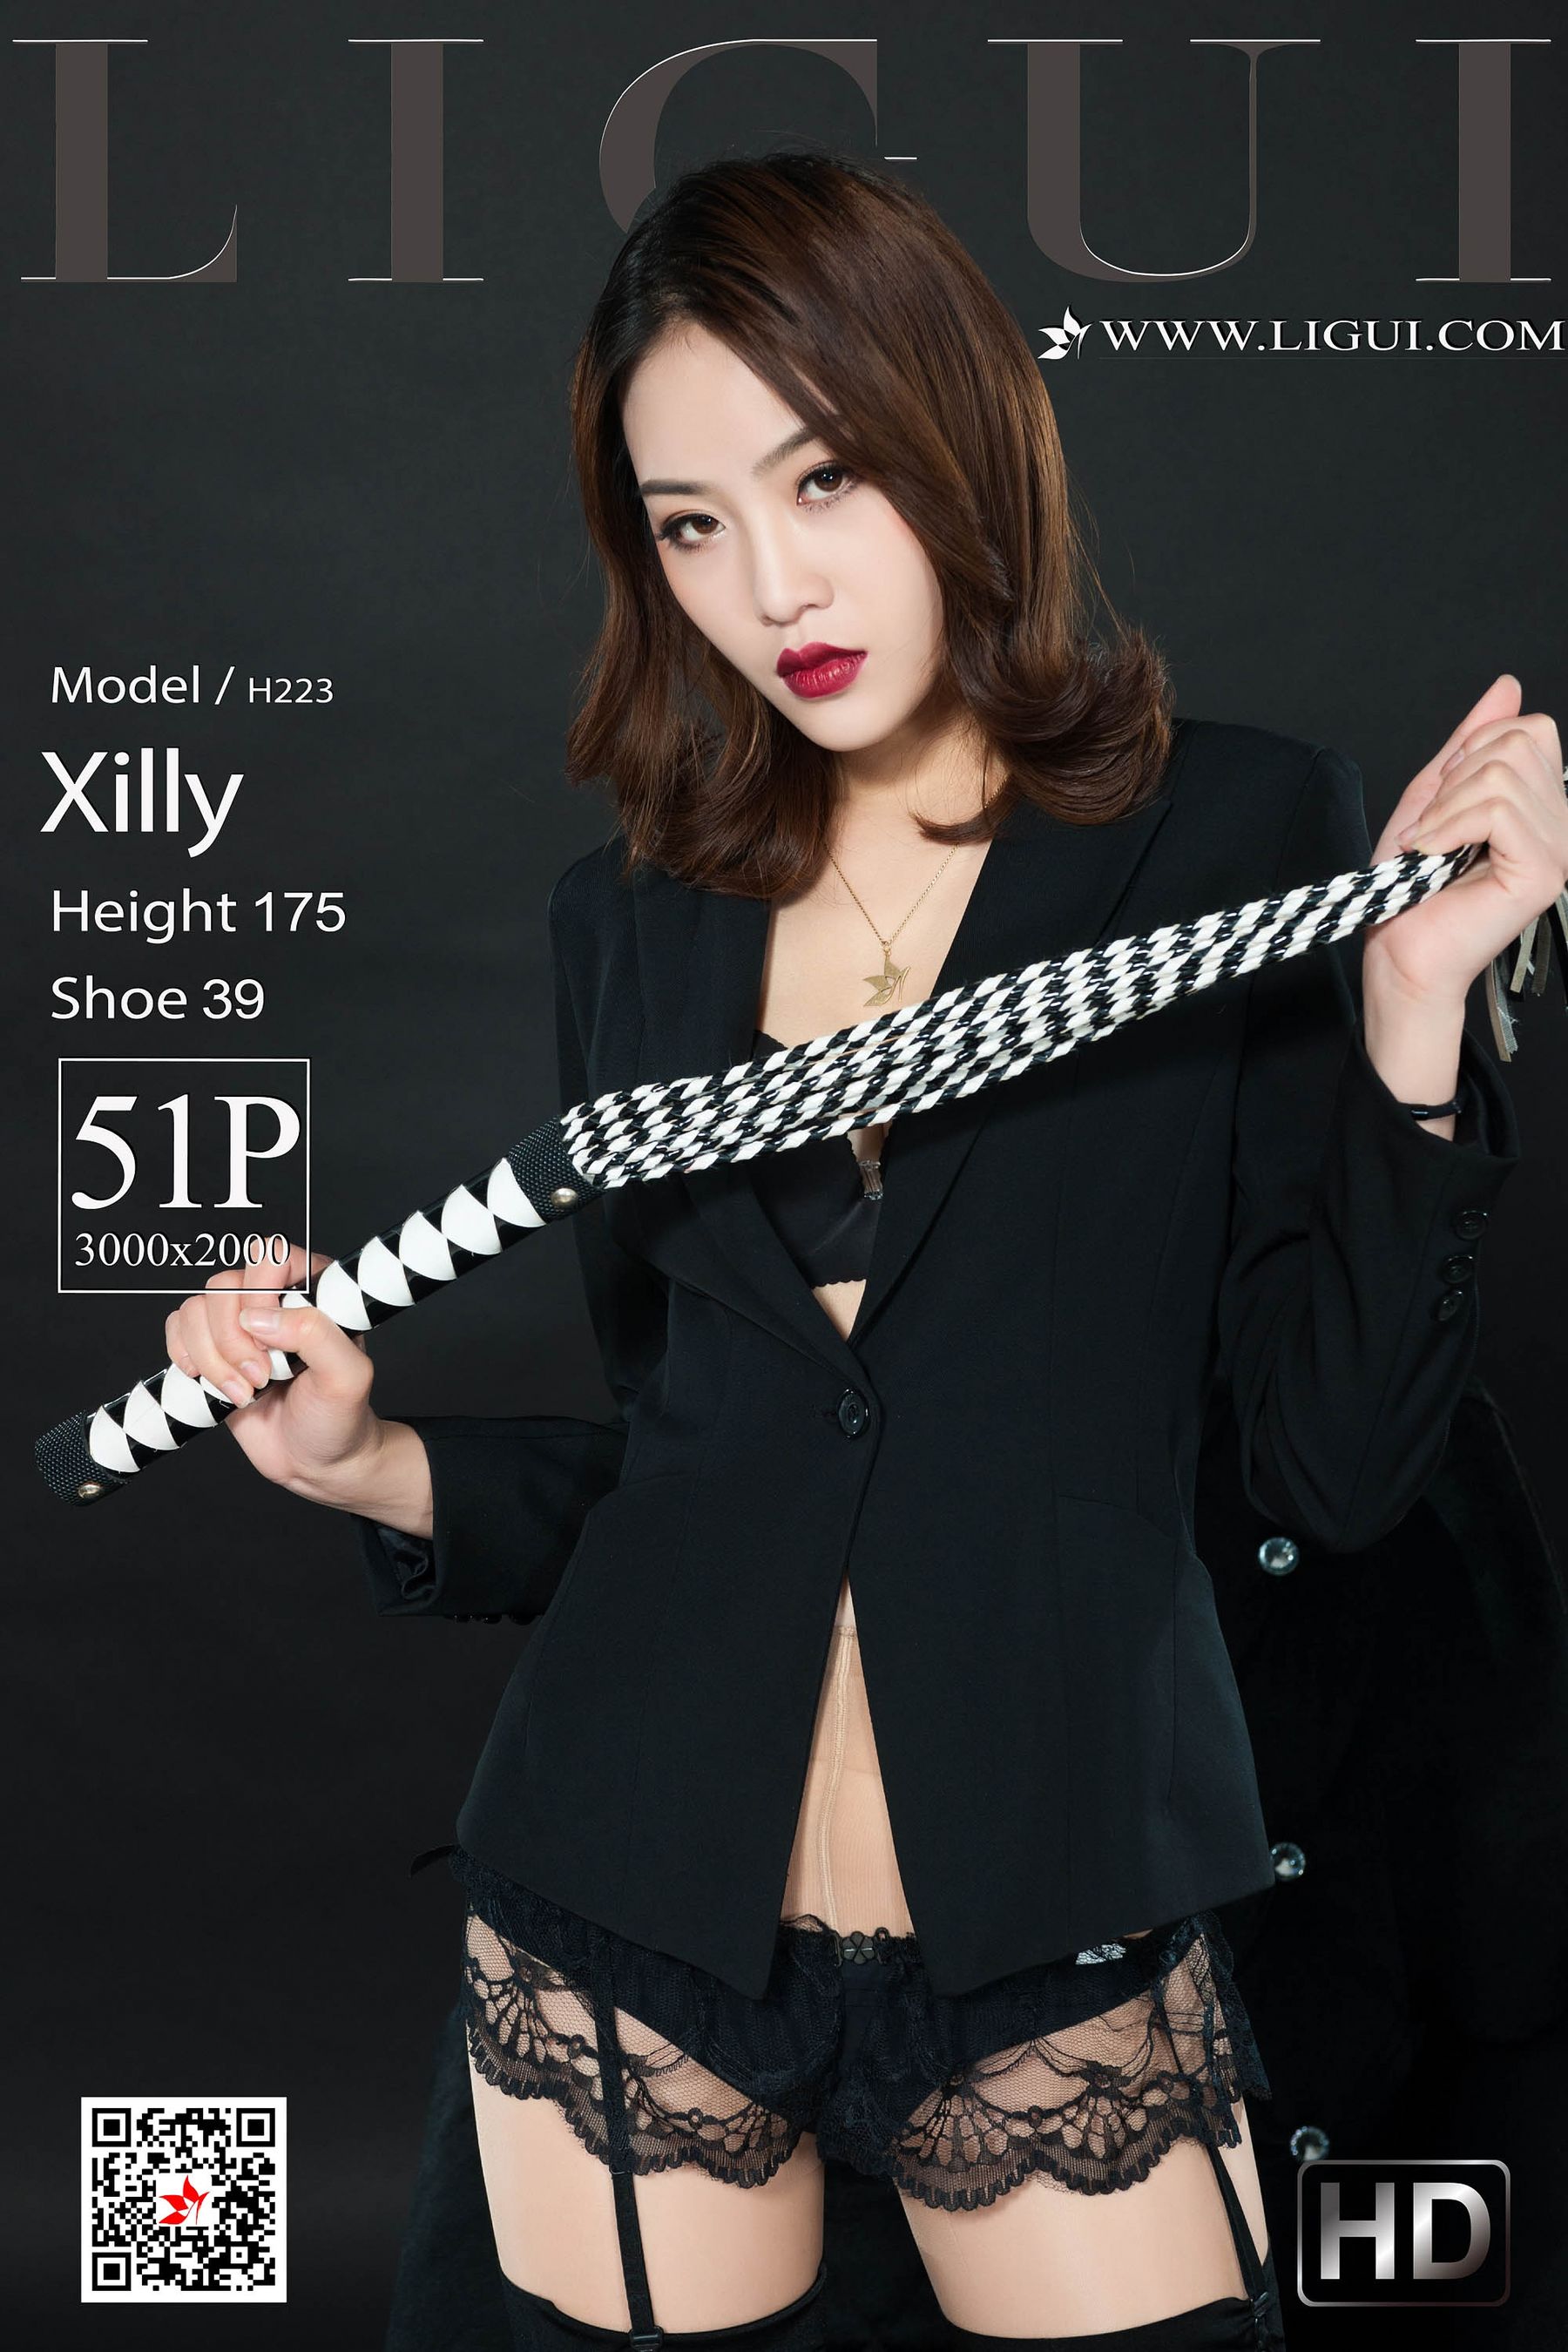 [丽柜Ligui] 网络丽人 Model Xilly